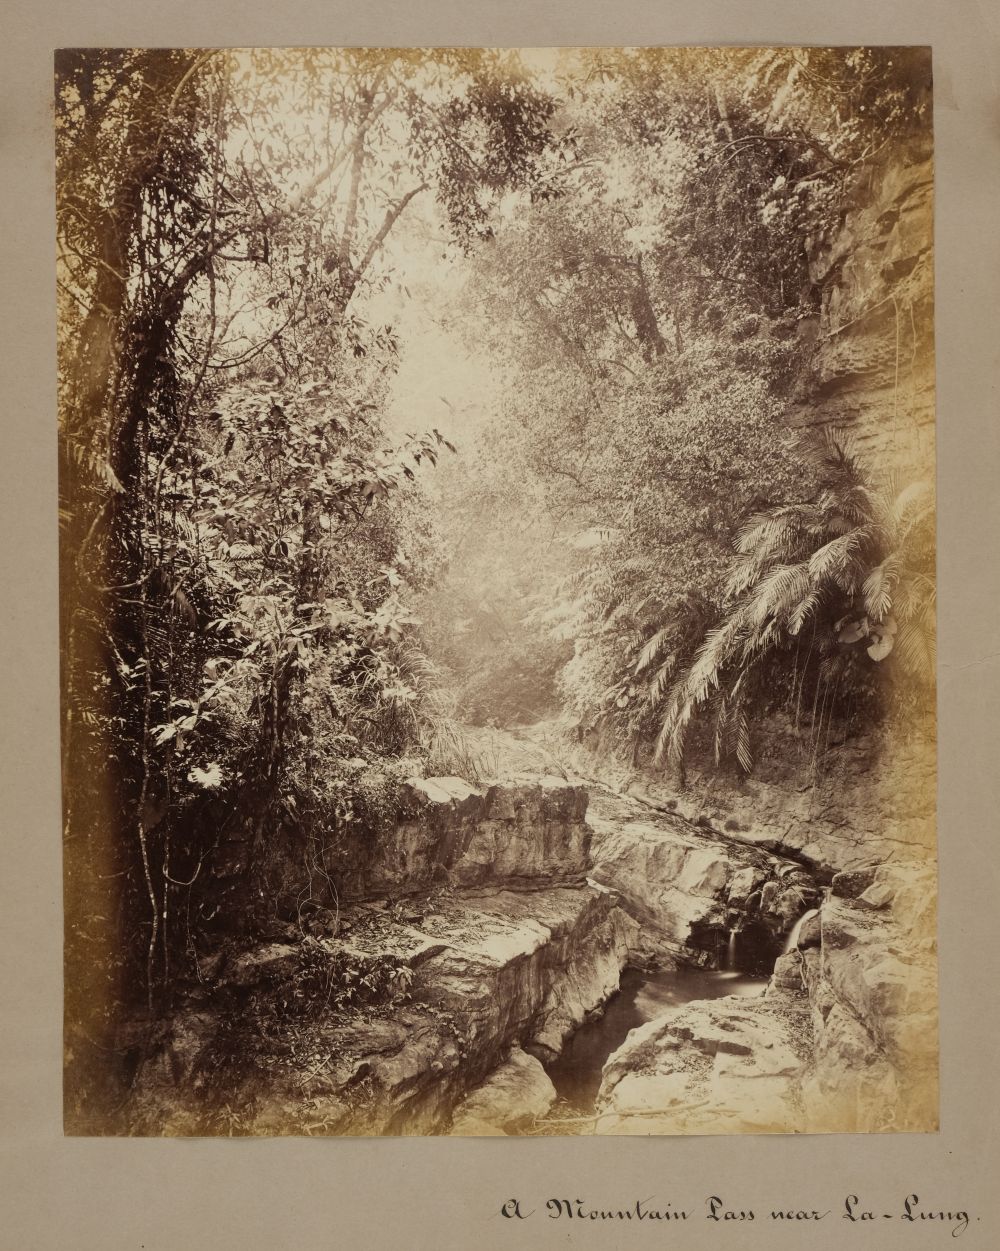 * Thomson (John, 1837-1921). A Mountain Stream near La-Lung [Lan-long], 1871, albumen print - Image 2 of 3